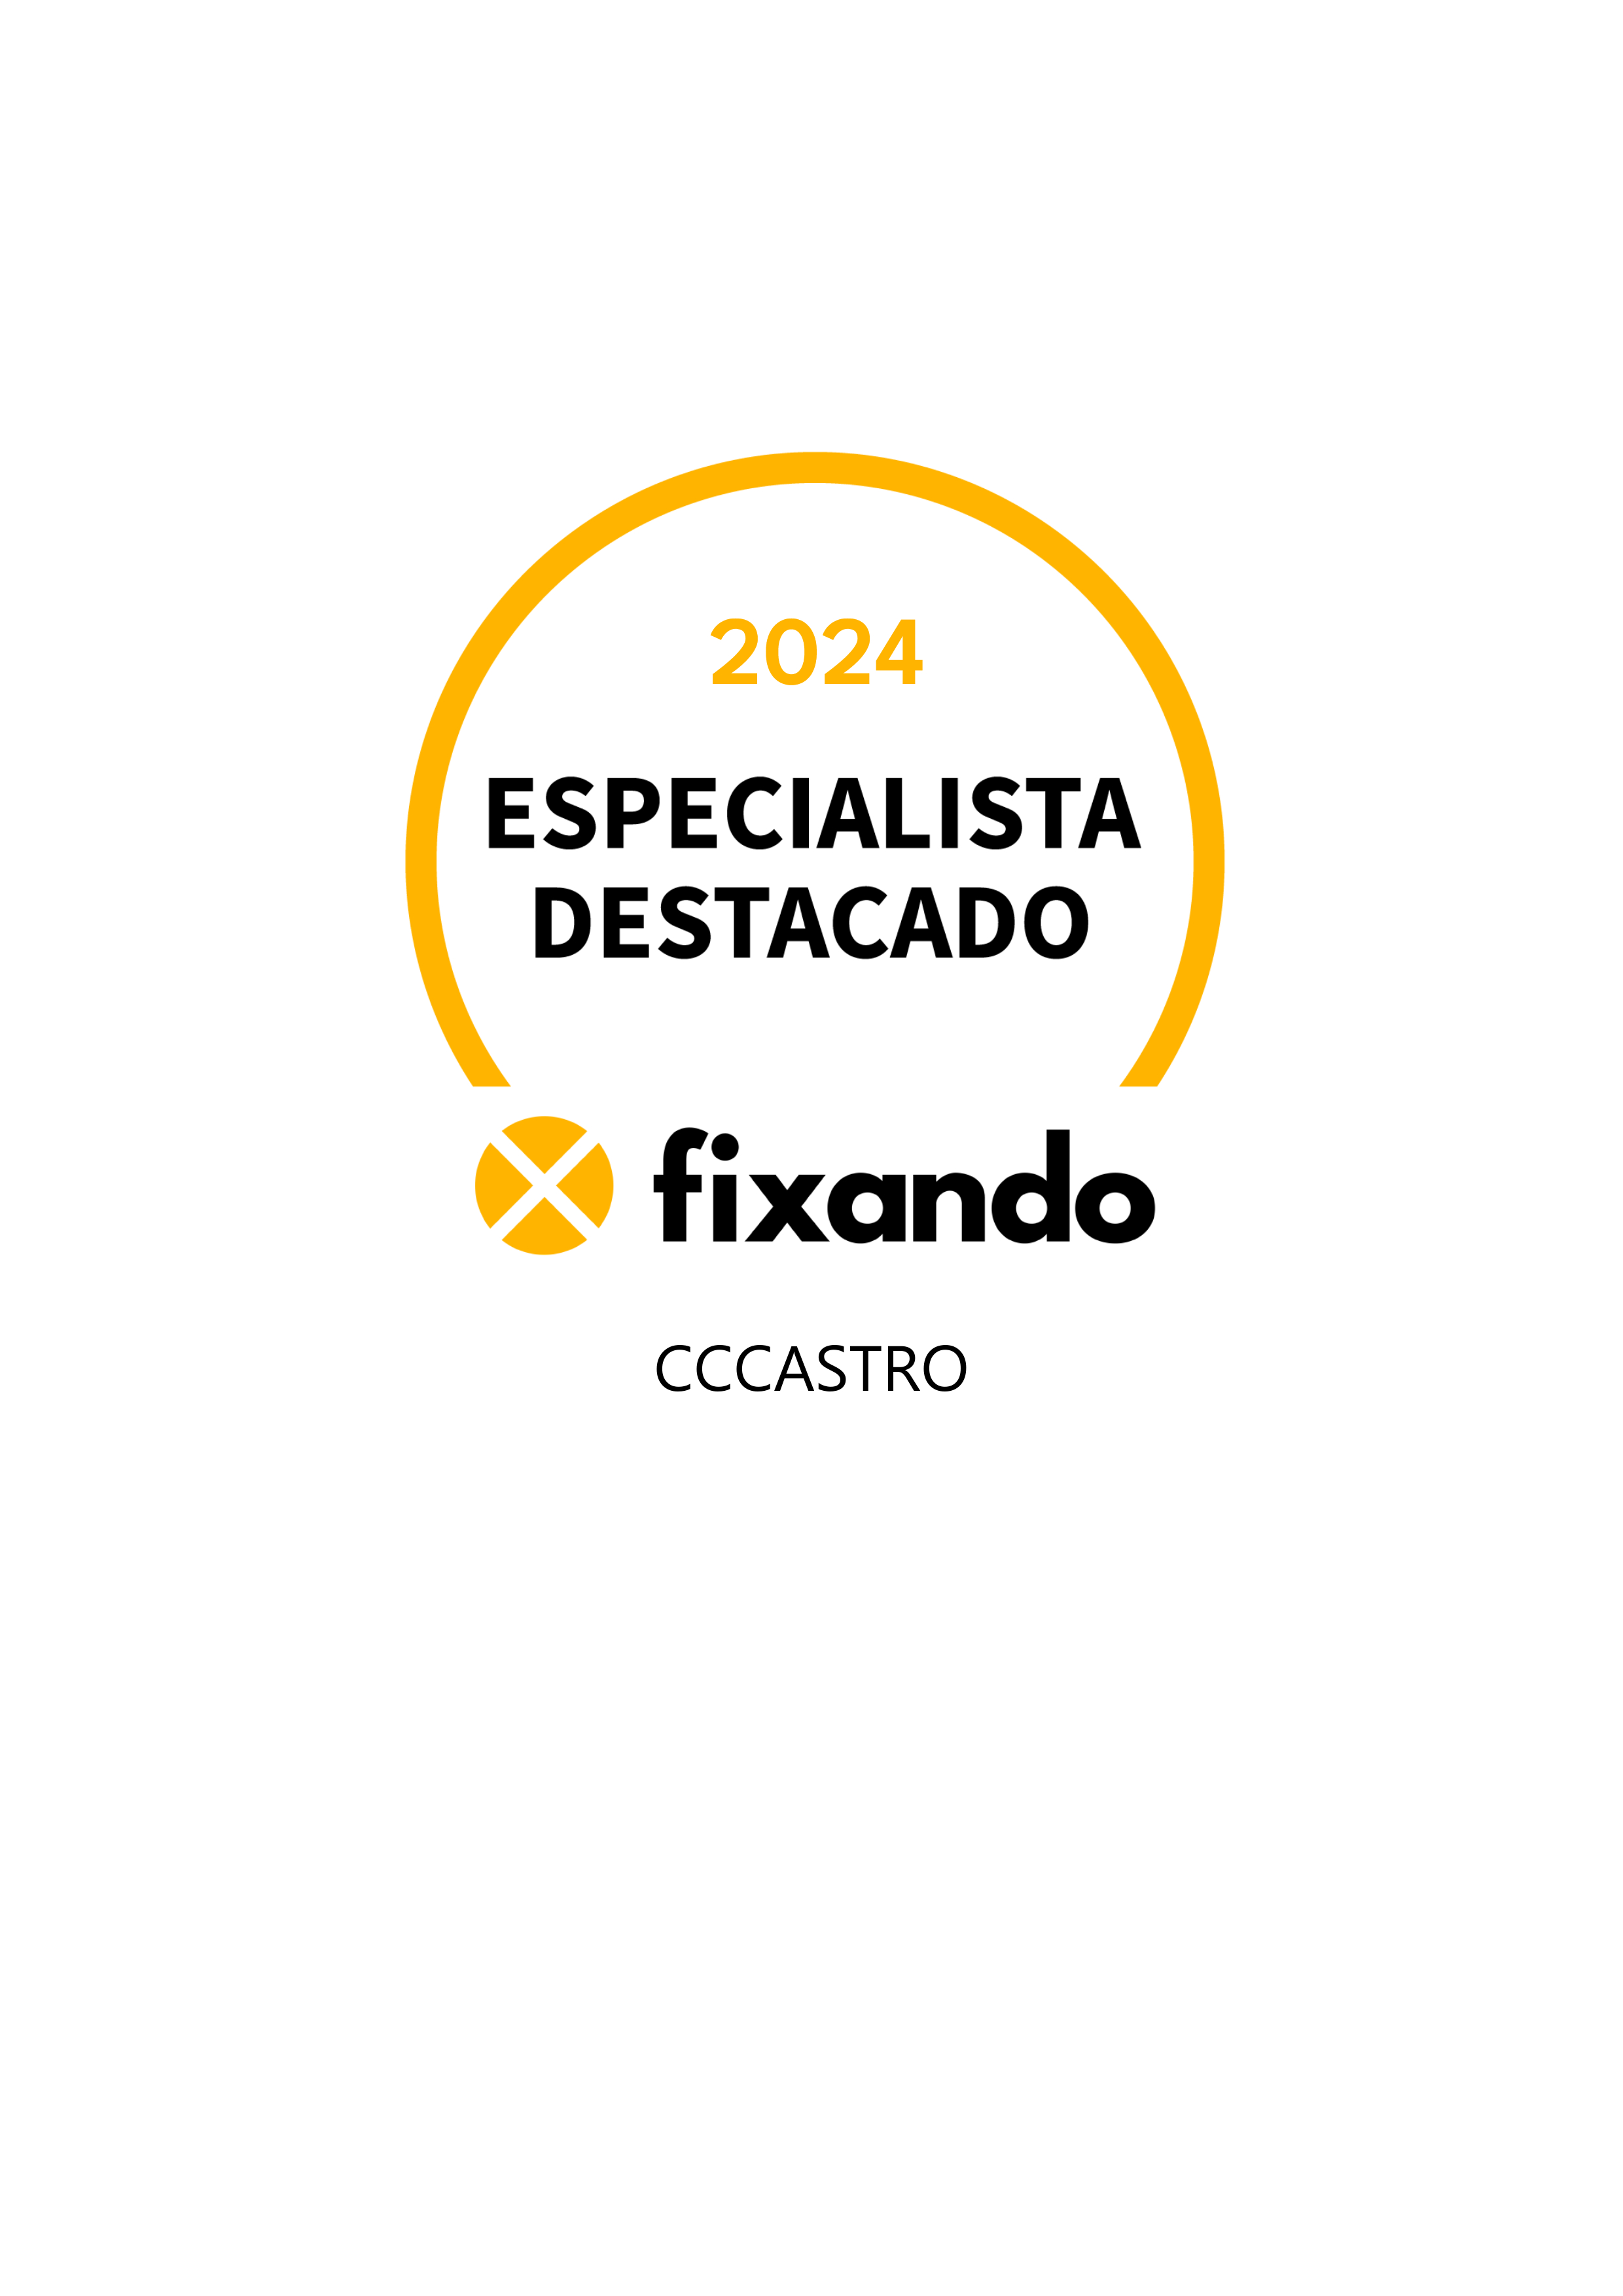 cccastro - Vila Nova da Barquinha - Consultoria de Estratégia e Operações